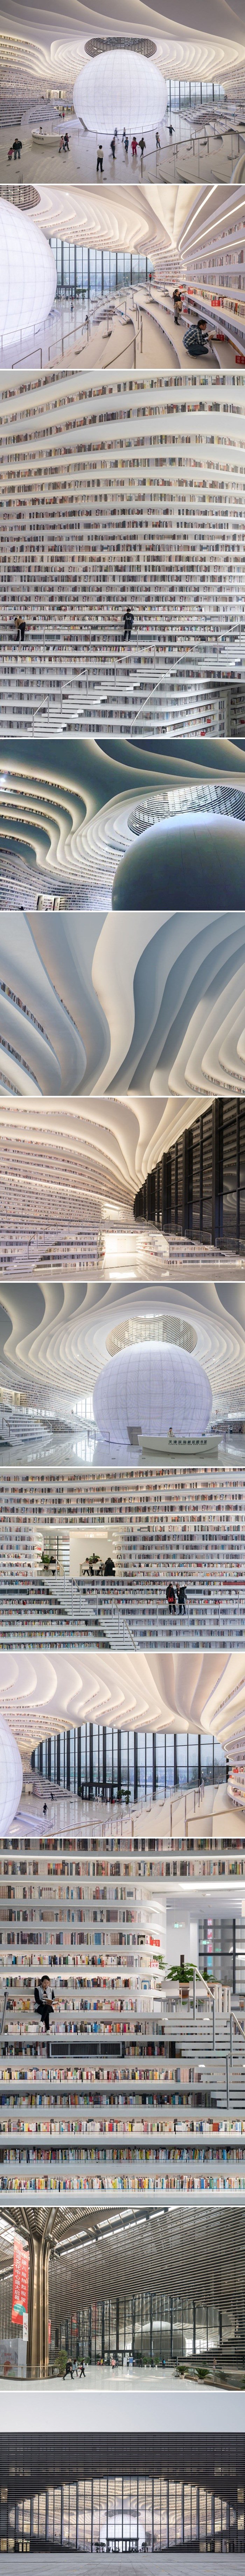 U Kini postoji knjižnica s preko milijun knjiga, unutrašnjost će vam oduzeti dah